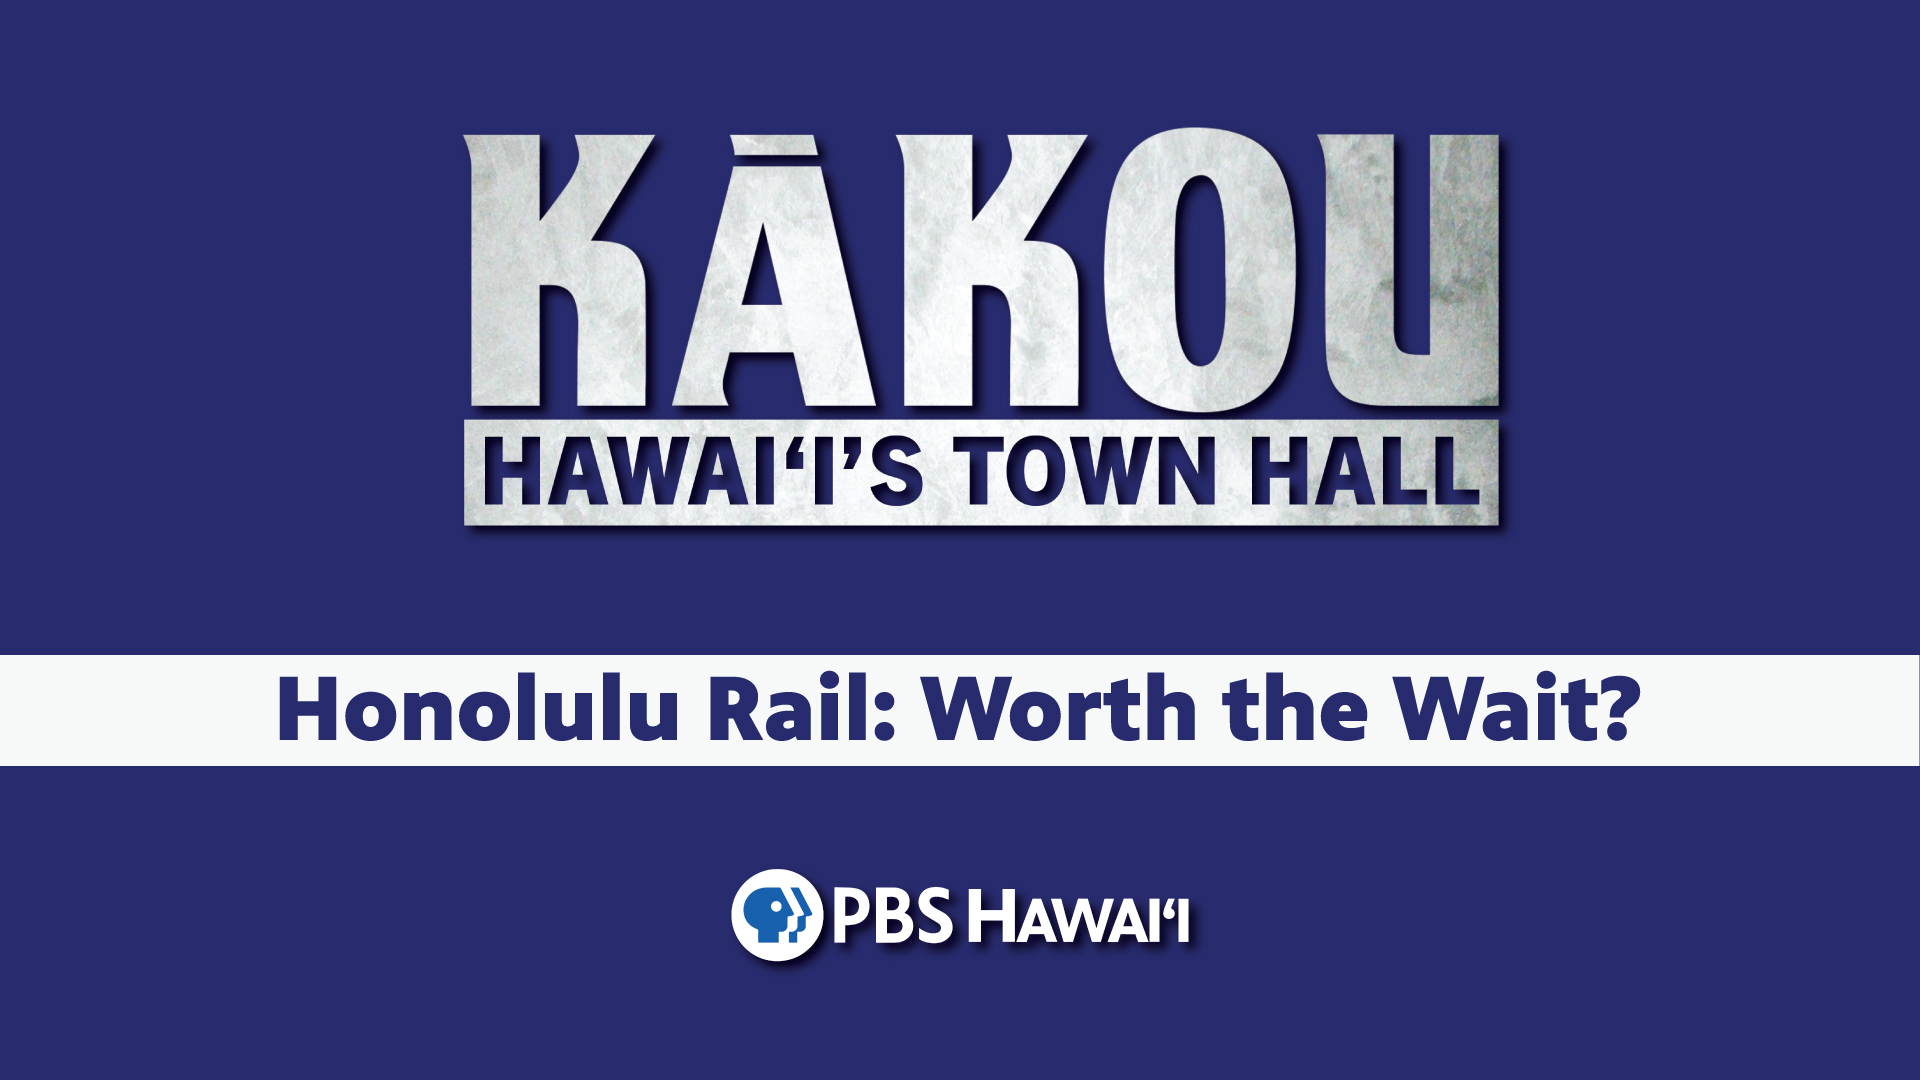 KĀKOU: Hawaiʻi’s Town Hall <br/>Honolulu Rail: Worth the Wait?